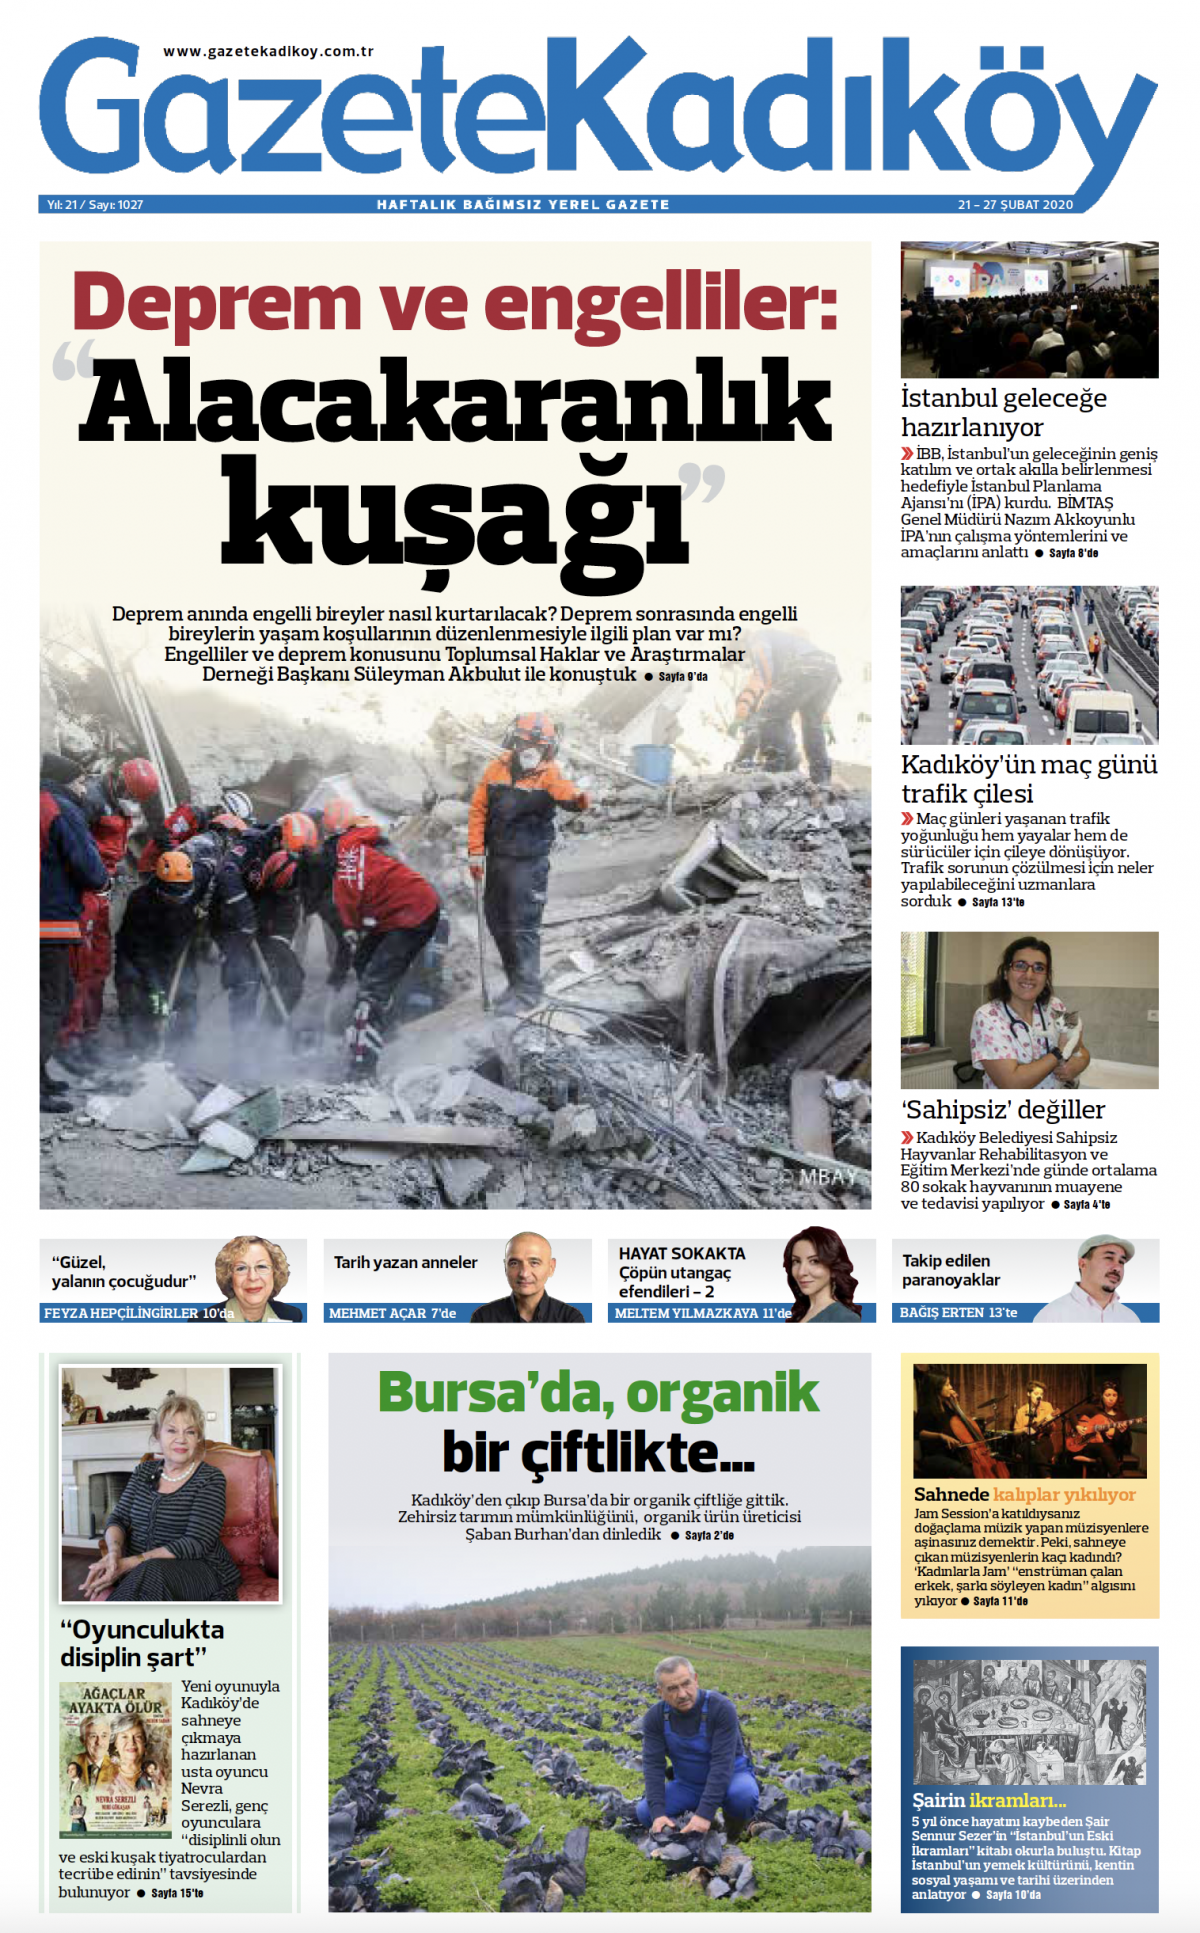 Gazete Kadıköy - 1027. Sayı